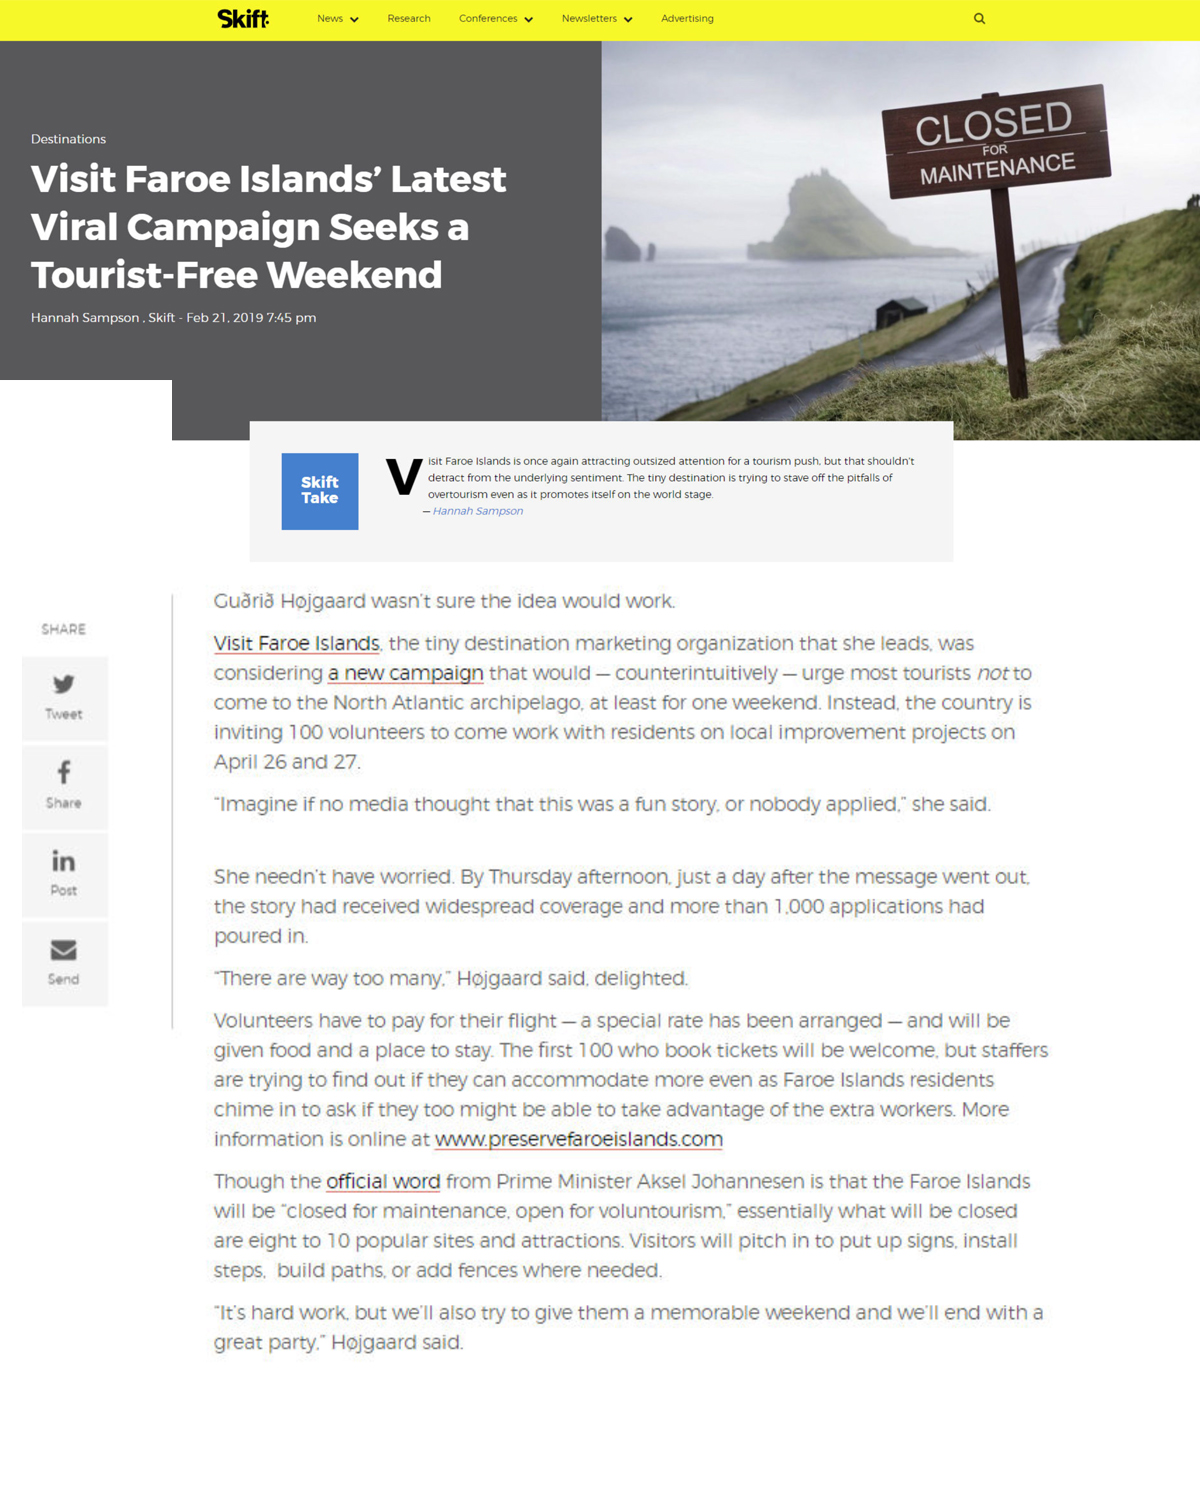 Faroe Islands Skift-2.jpg